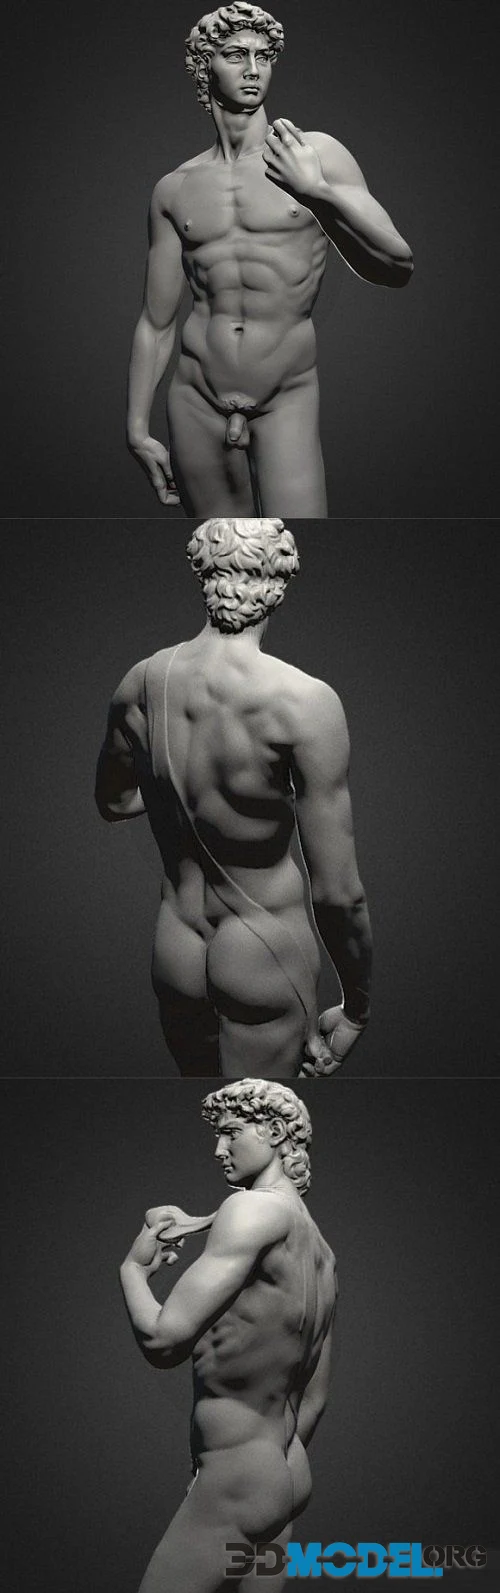 David Statue by Michelangelo (PBR)